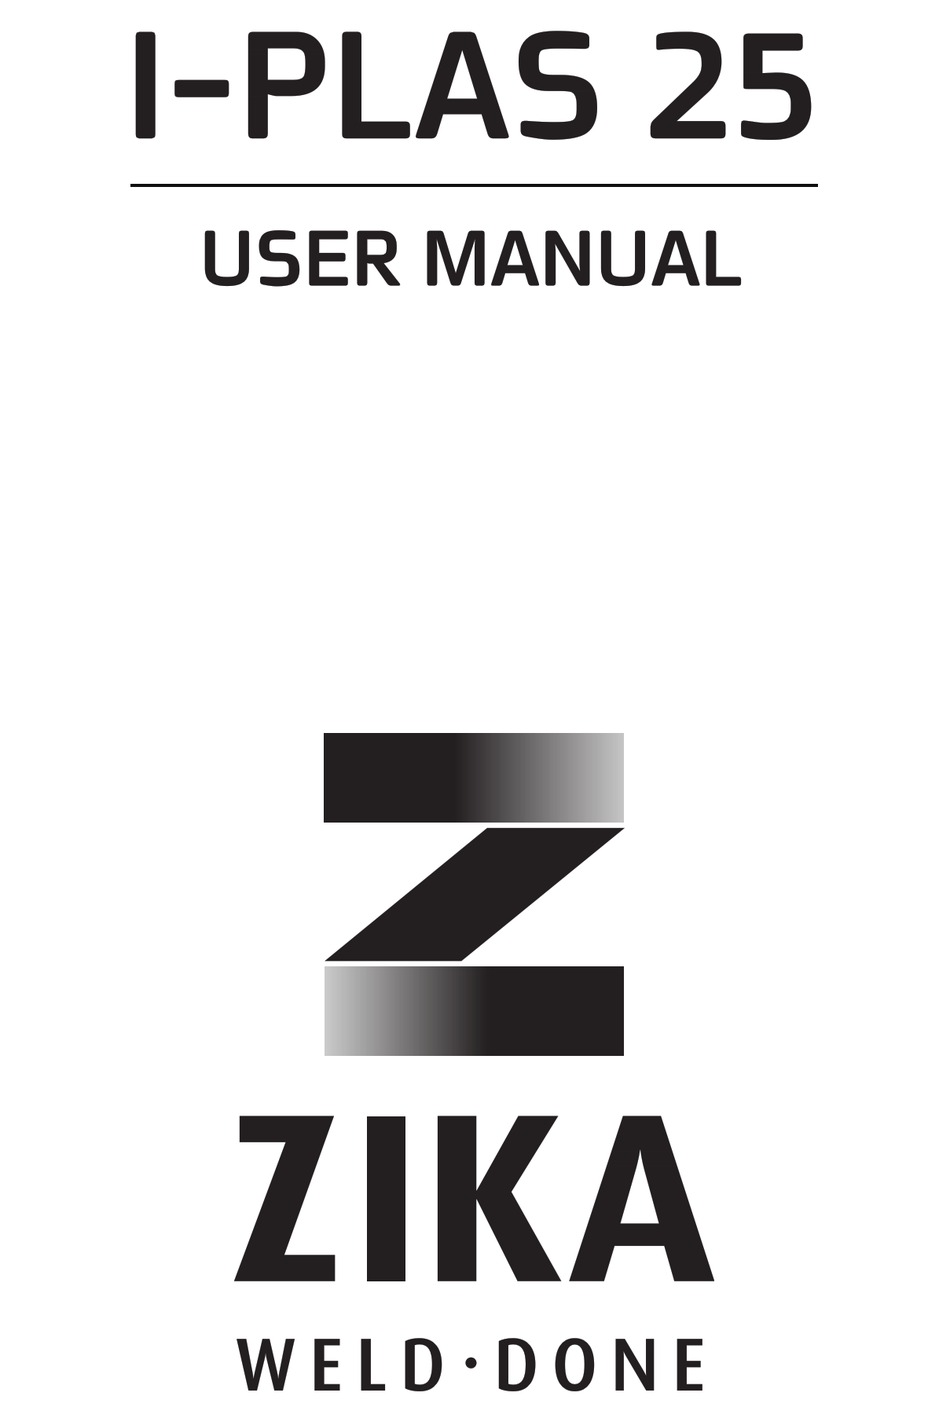 ZIKA IPLAS25 II USER MANUAL Pdf Download ManualsLib